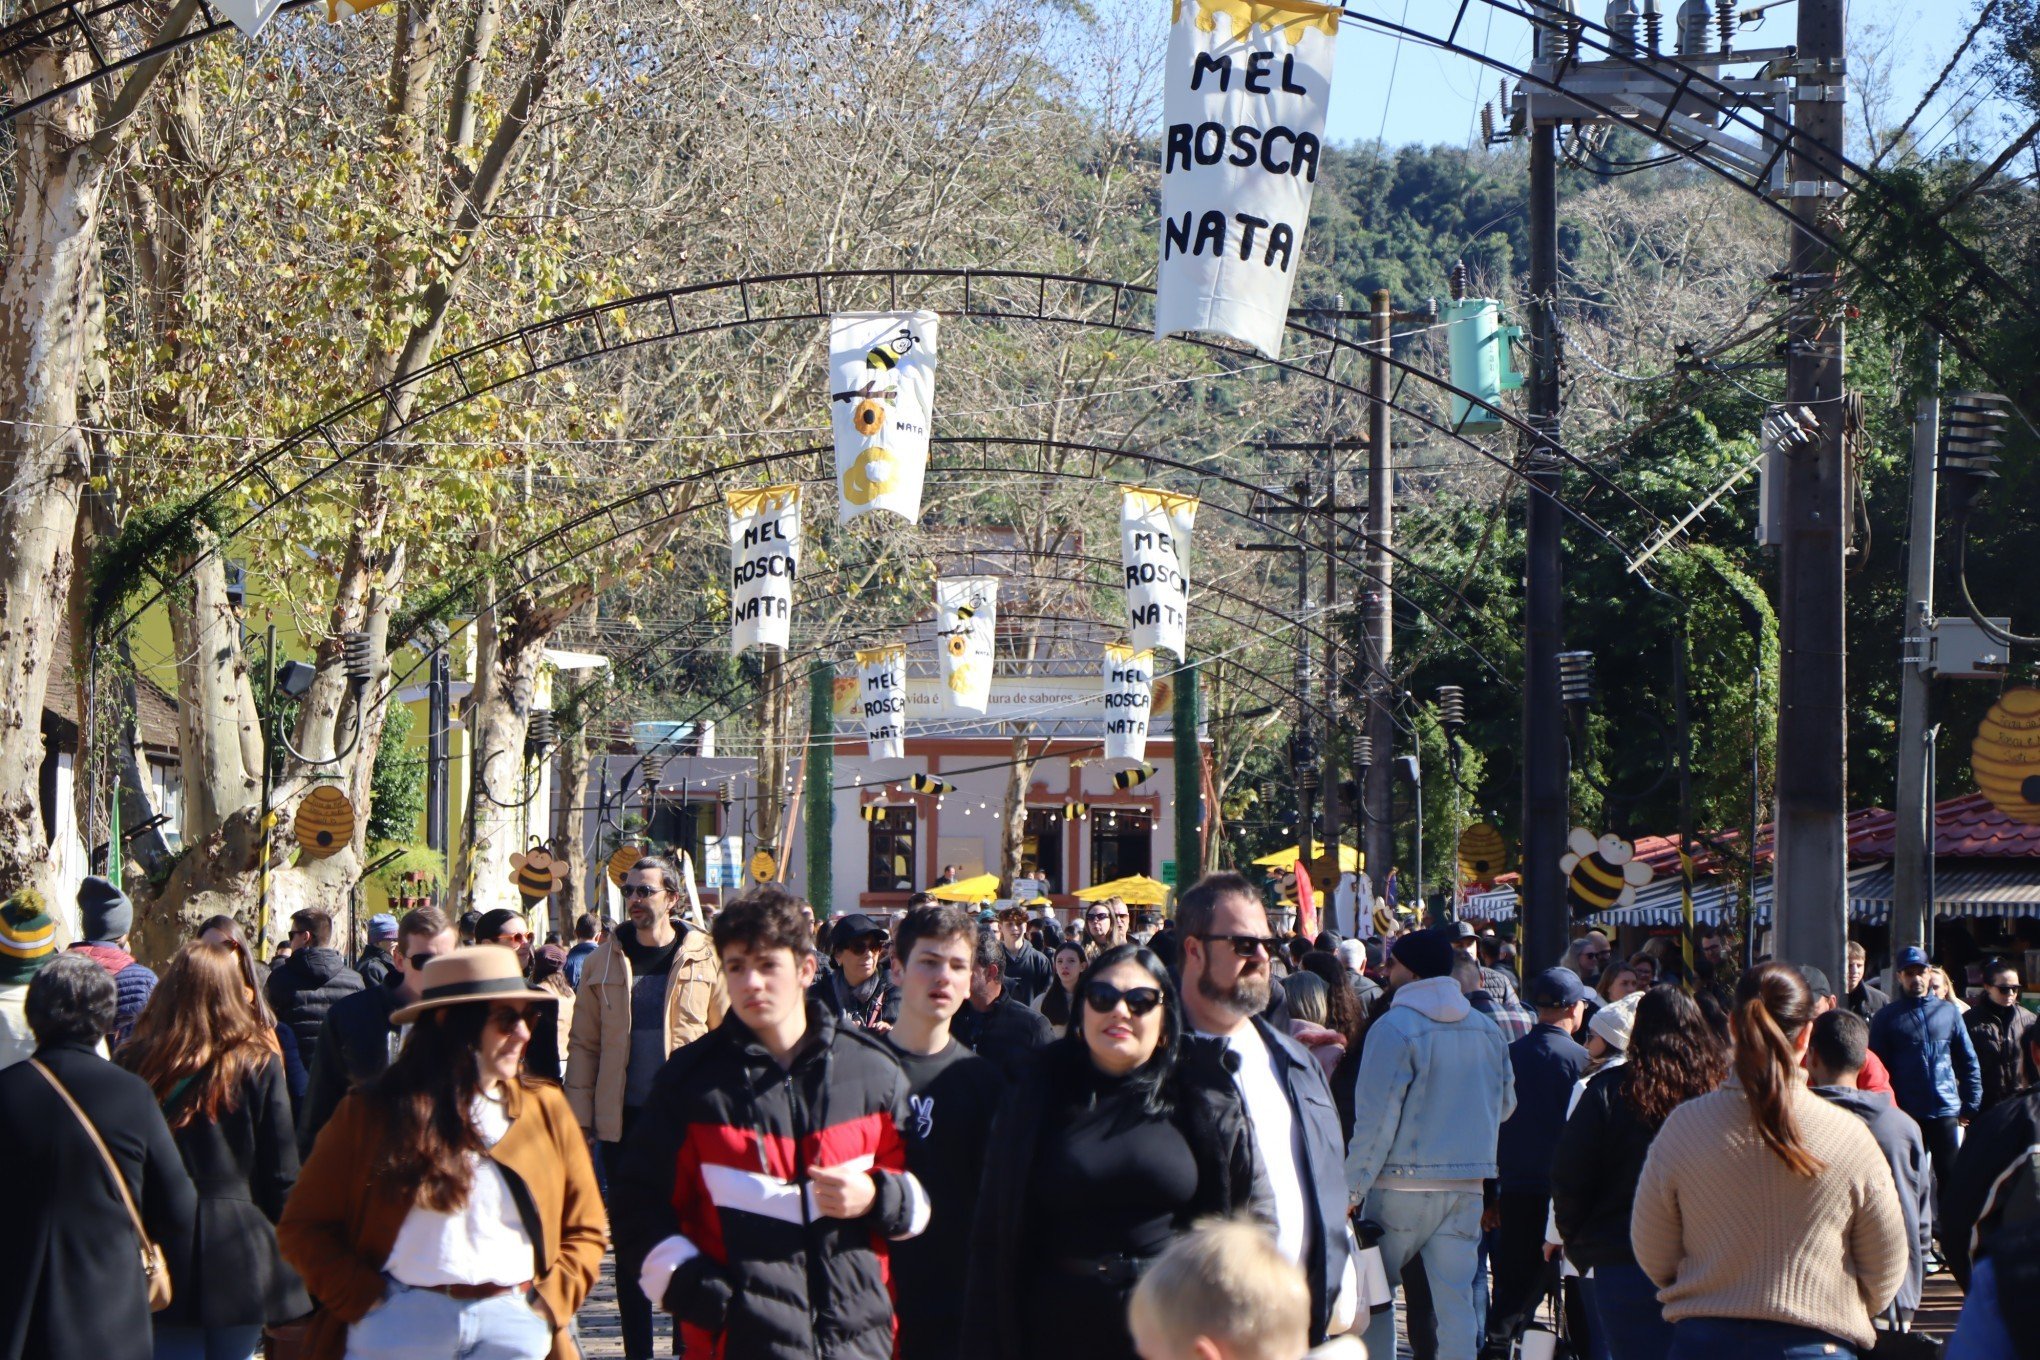 Público não se intimida com o frio e aproveita o domingo na Feira do Mel, Rosca e Nata em Ivoti